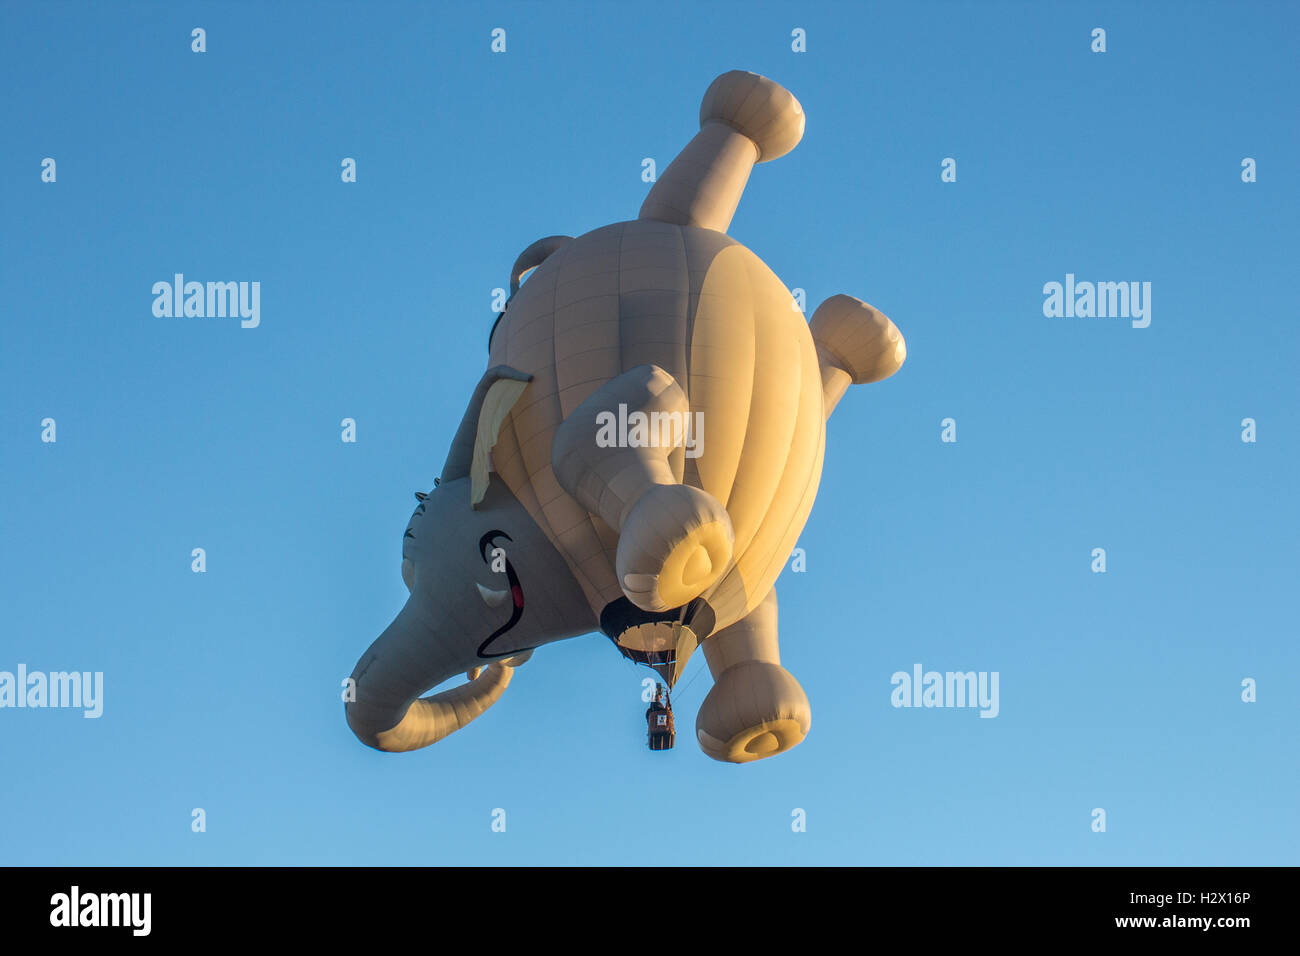 Forme spéciale hot air balloon aloft Banque D'Images